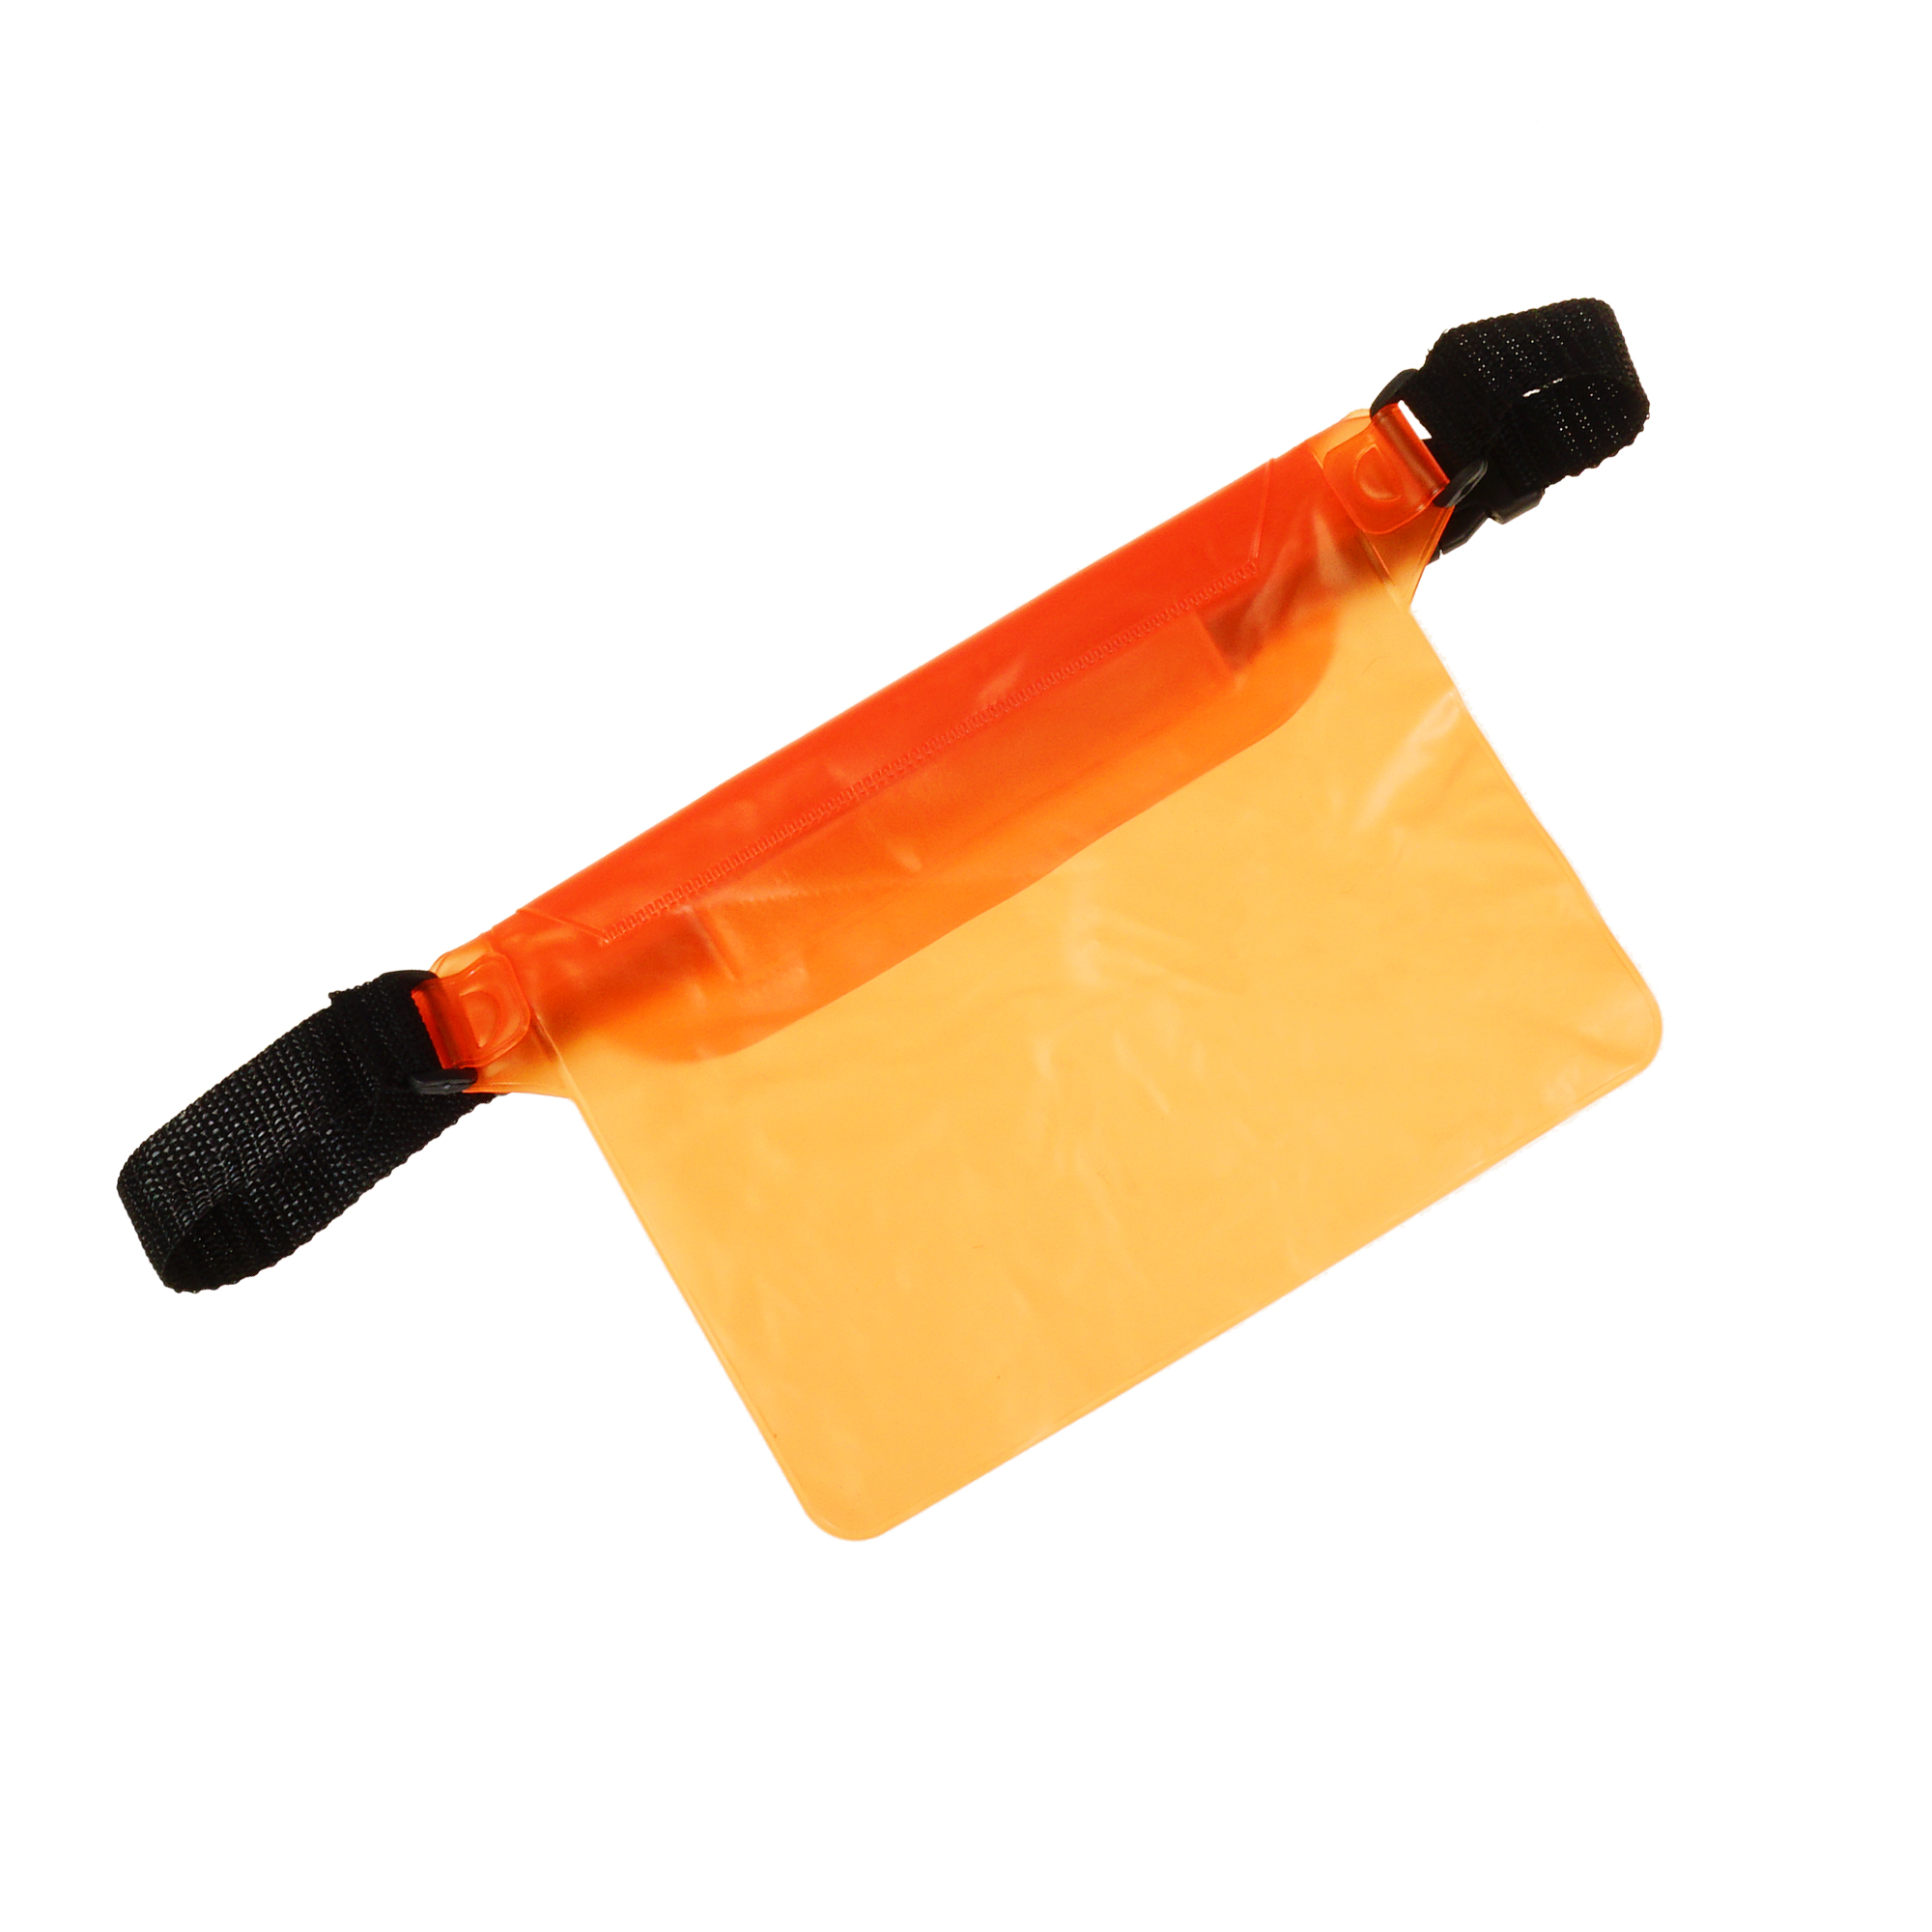 Акція на Поясна сумка чохол Supretto водонепроникна, помаранчева (71390005) від Wellamart - 2